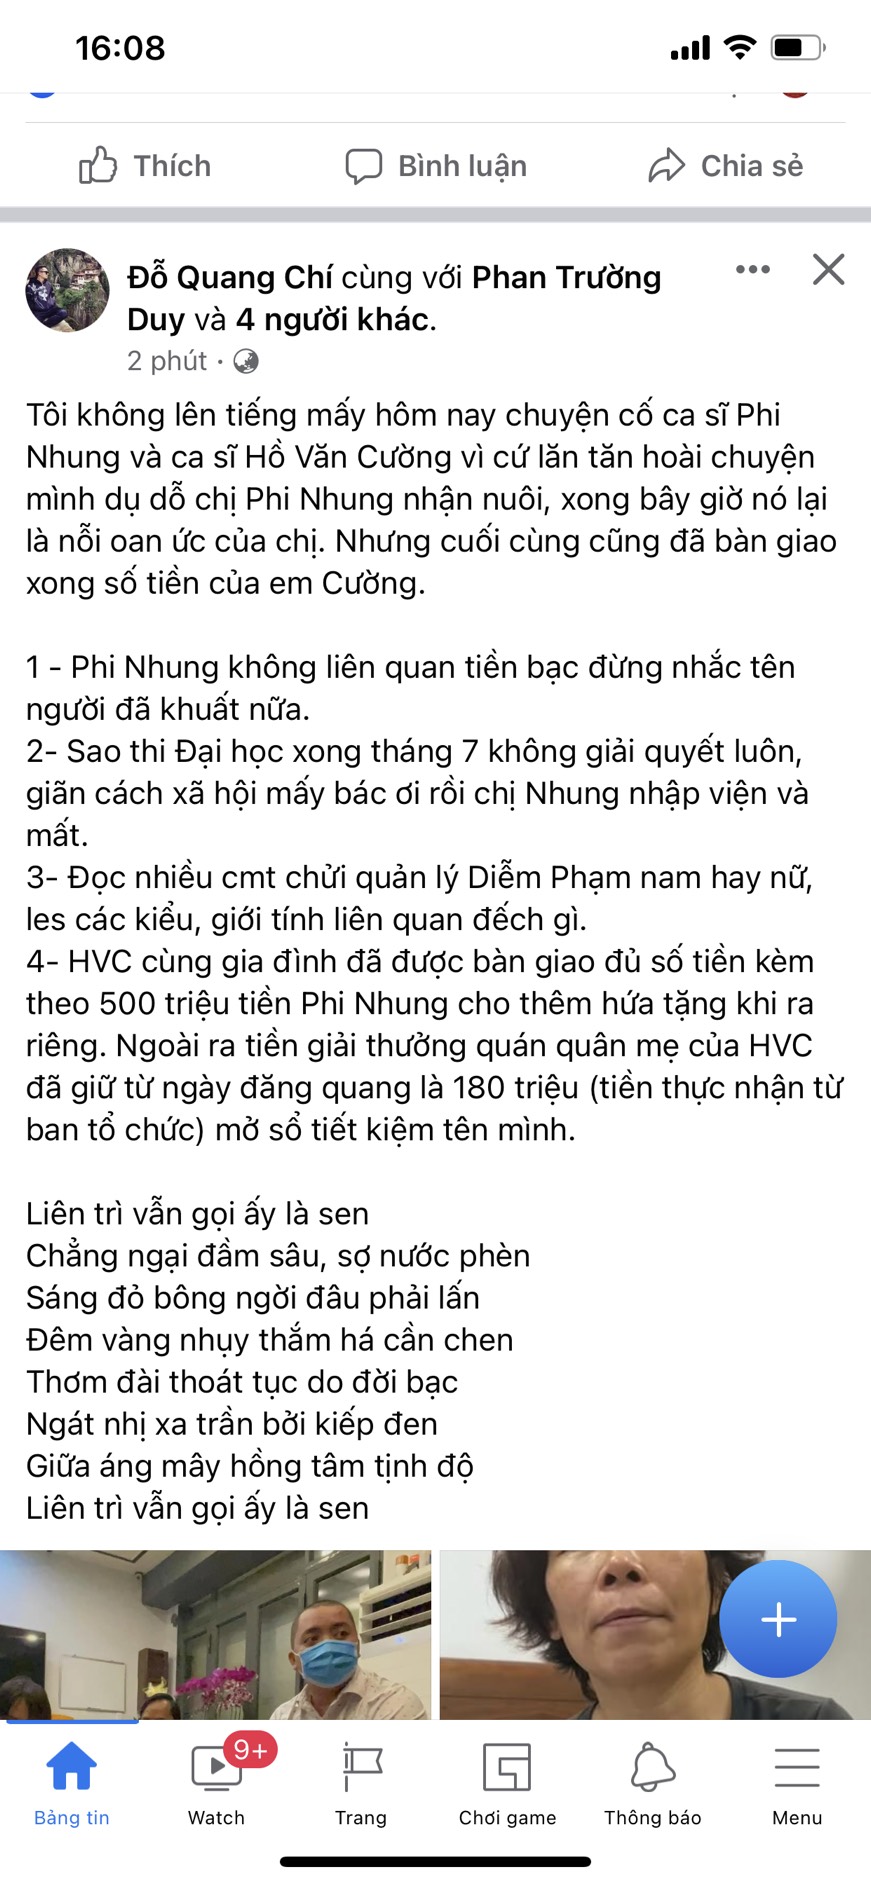 Bài đăng của thành viên trong ê kíp Phi Nhung được đăng tải cách đây ít giờ